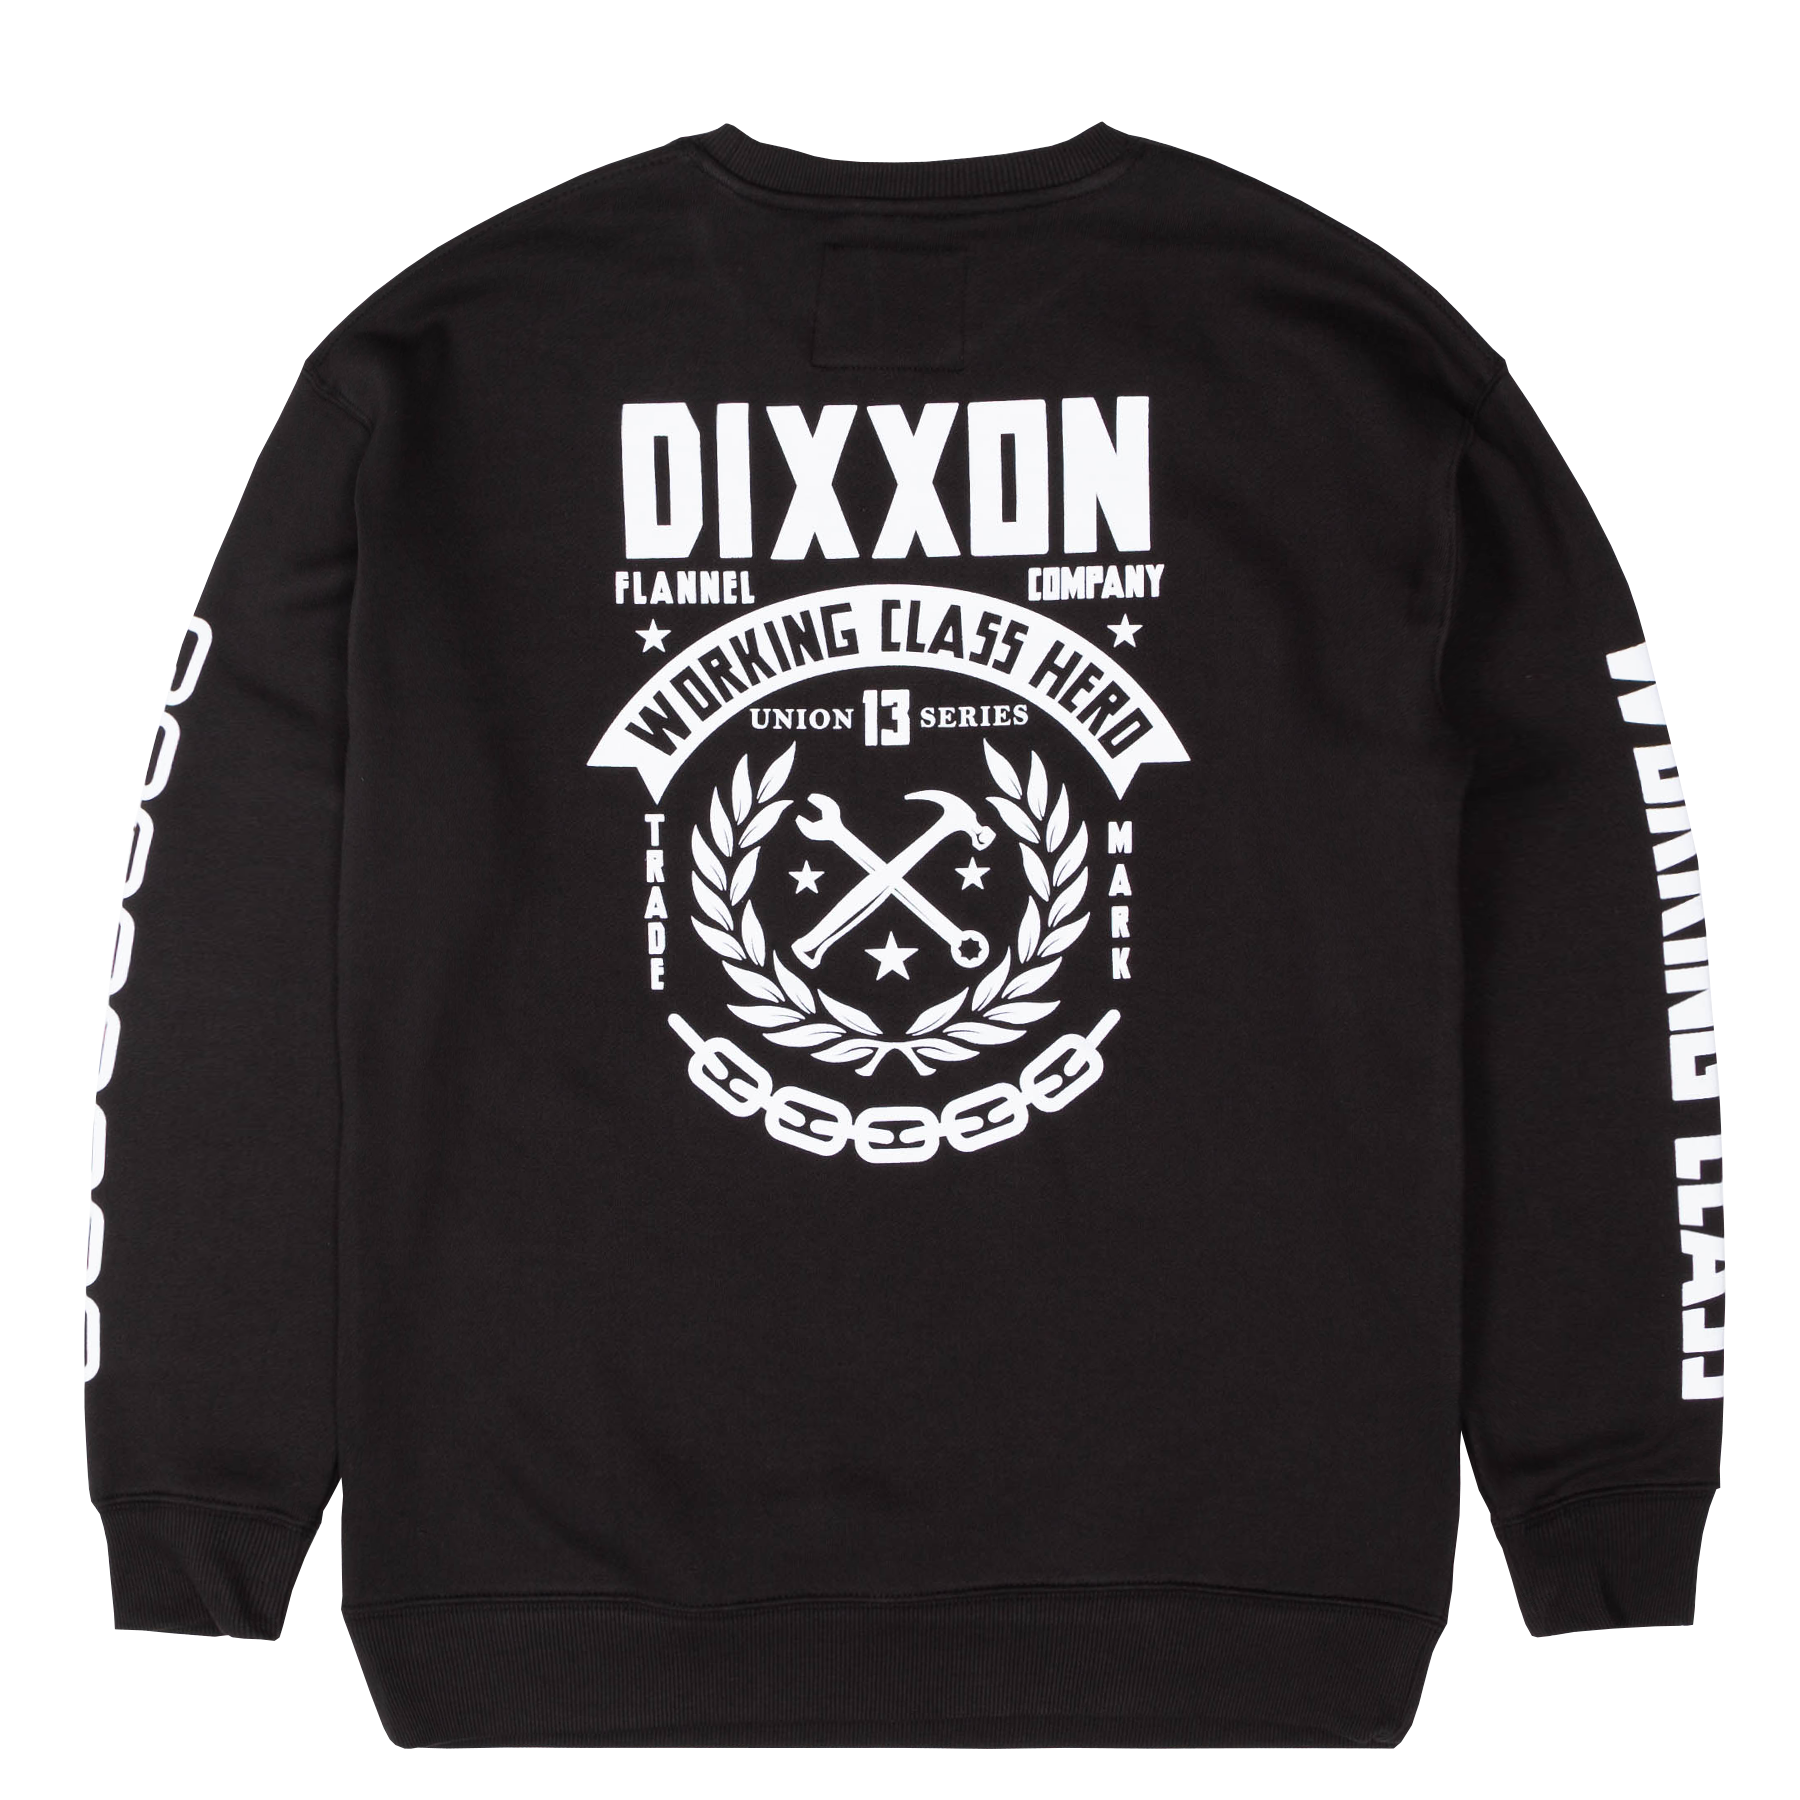 Weld Crewneck Sweatshirt - Dixxon Flannel Co.